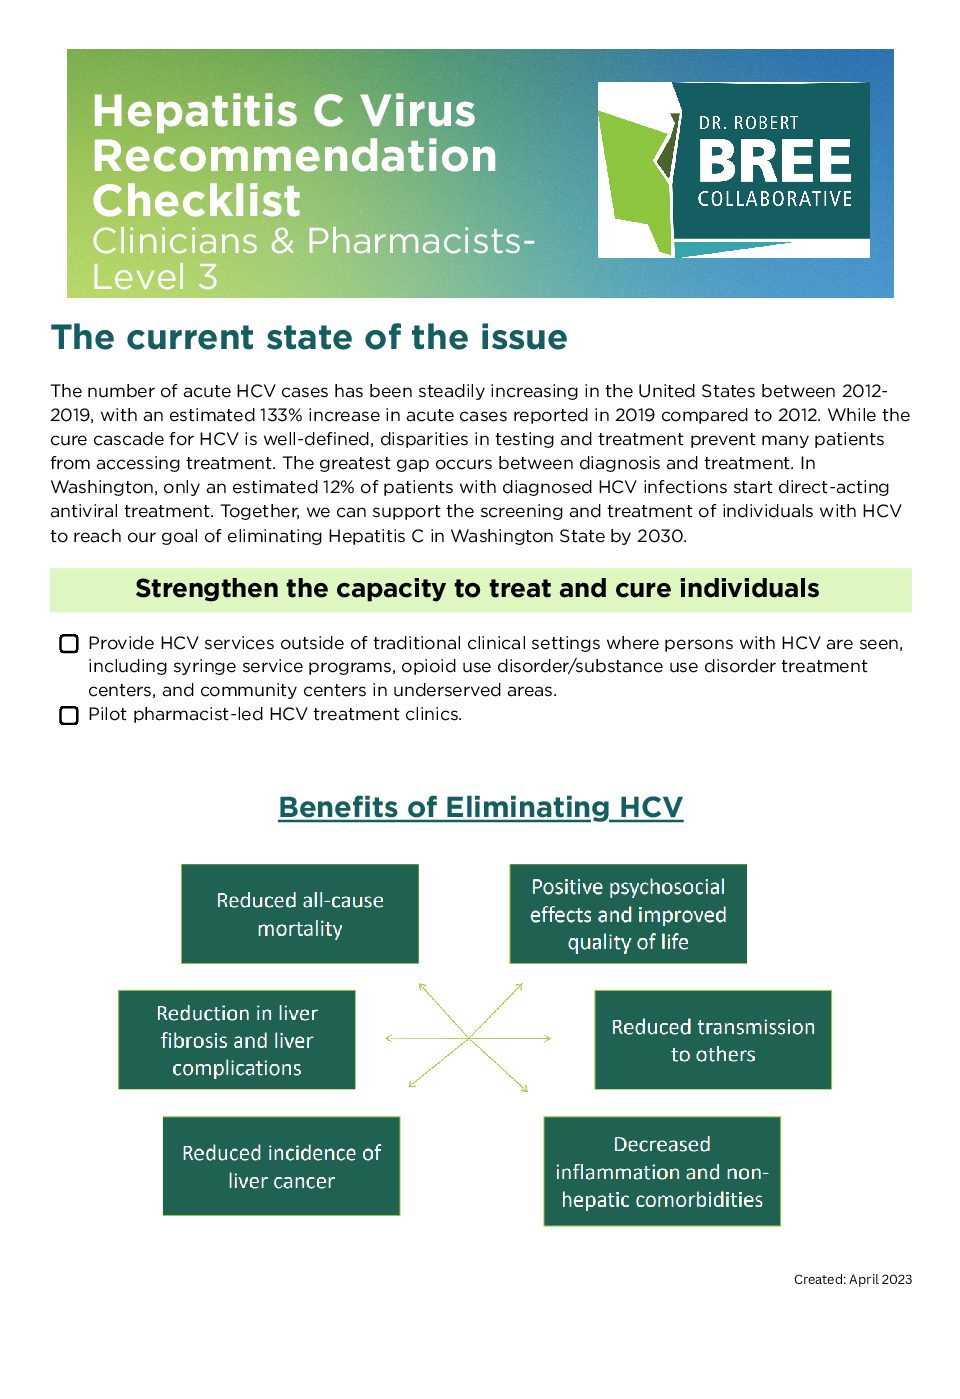 HCV Checklist Clinicians & Pharmacists-Level 3